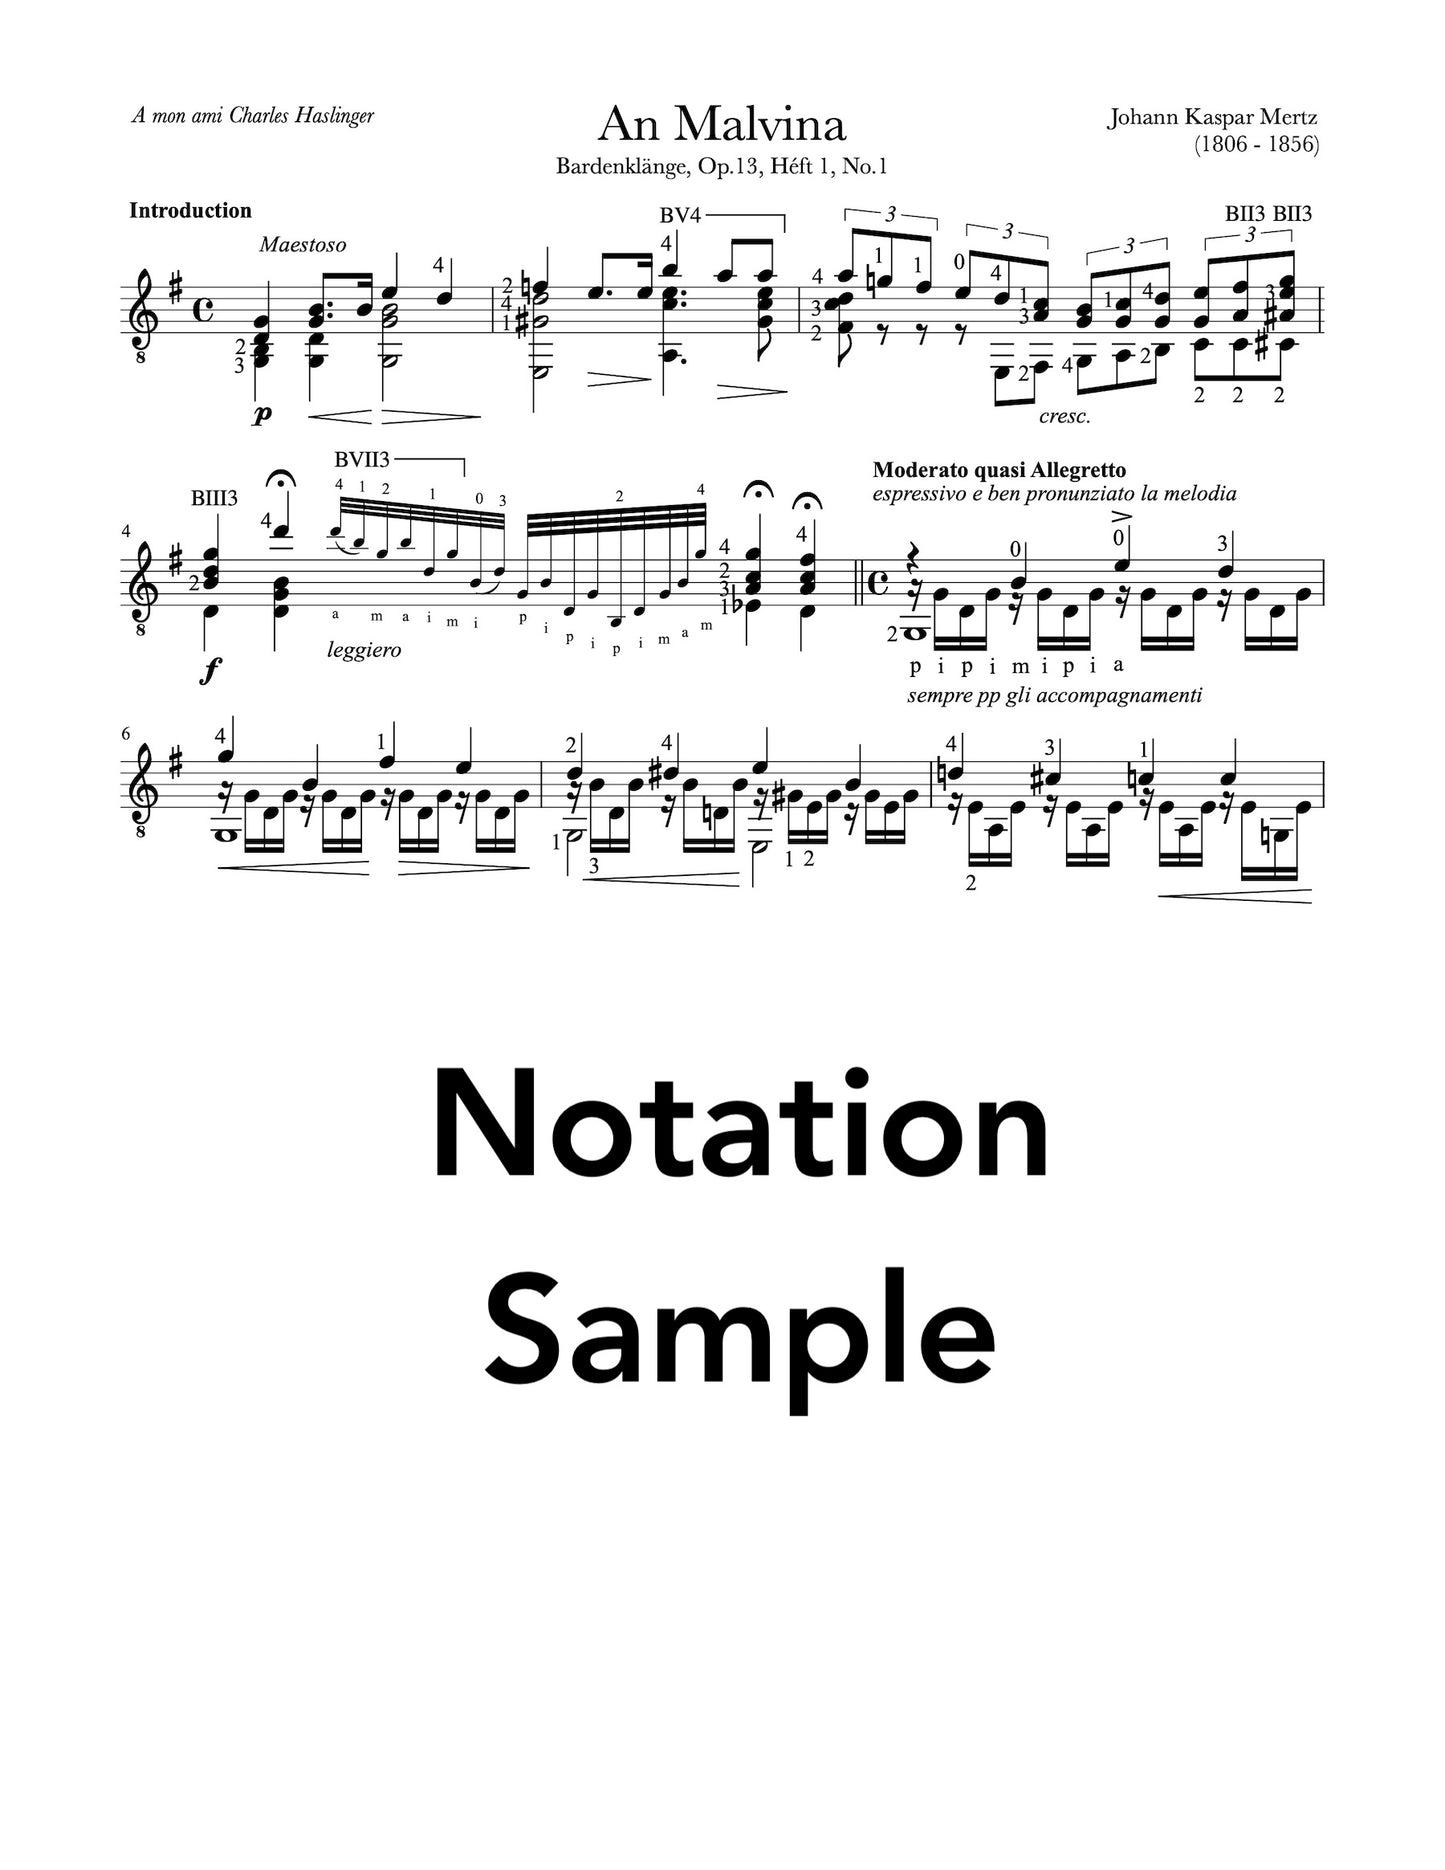 An Malvina by Mertz for Guitar (Notation Sample)